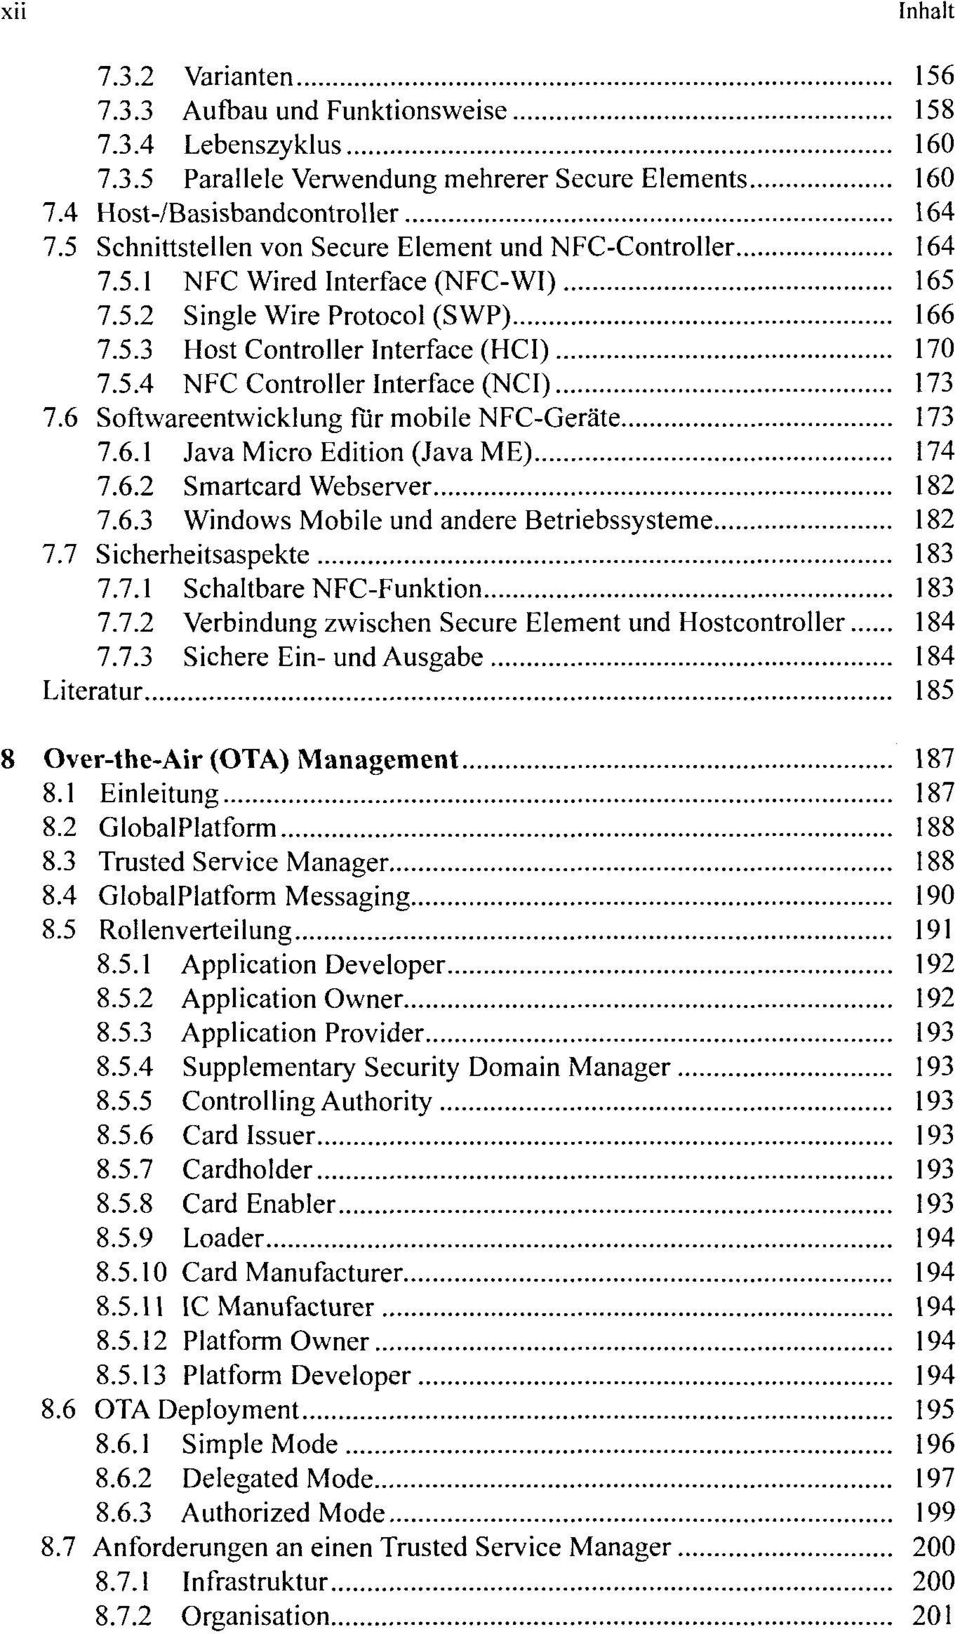 6 Softwareentwicklung für mobile NFC-Geräte 173 7.6.1 Java Micro Edition (Java ME) 174 7.6.2 Smartcard Webserver 182 7.6.3 Windows Mobile und andere Betriebssysteme 182 7.7 Sicherheitsaspekte 183 7.7.1 Schaltbare NFC-Funktion 183 7.